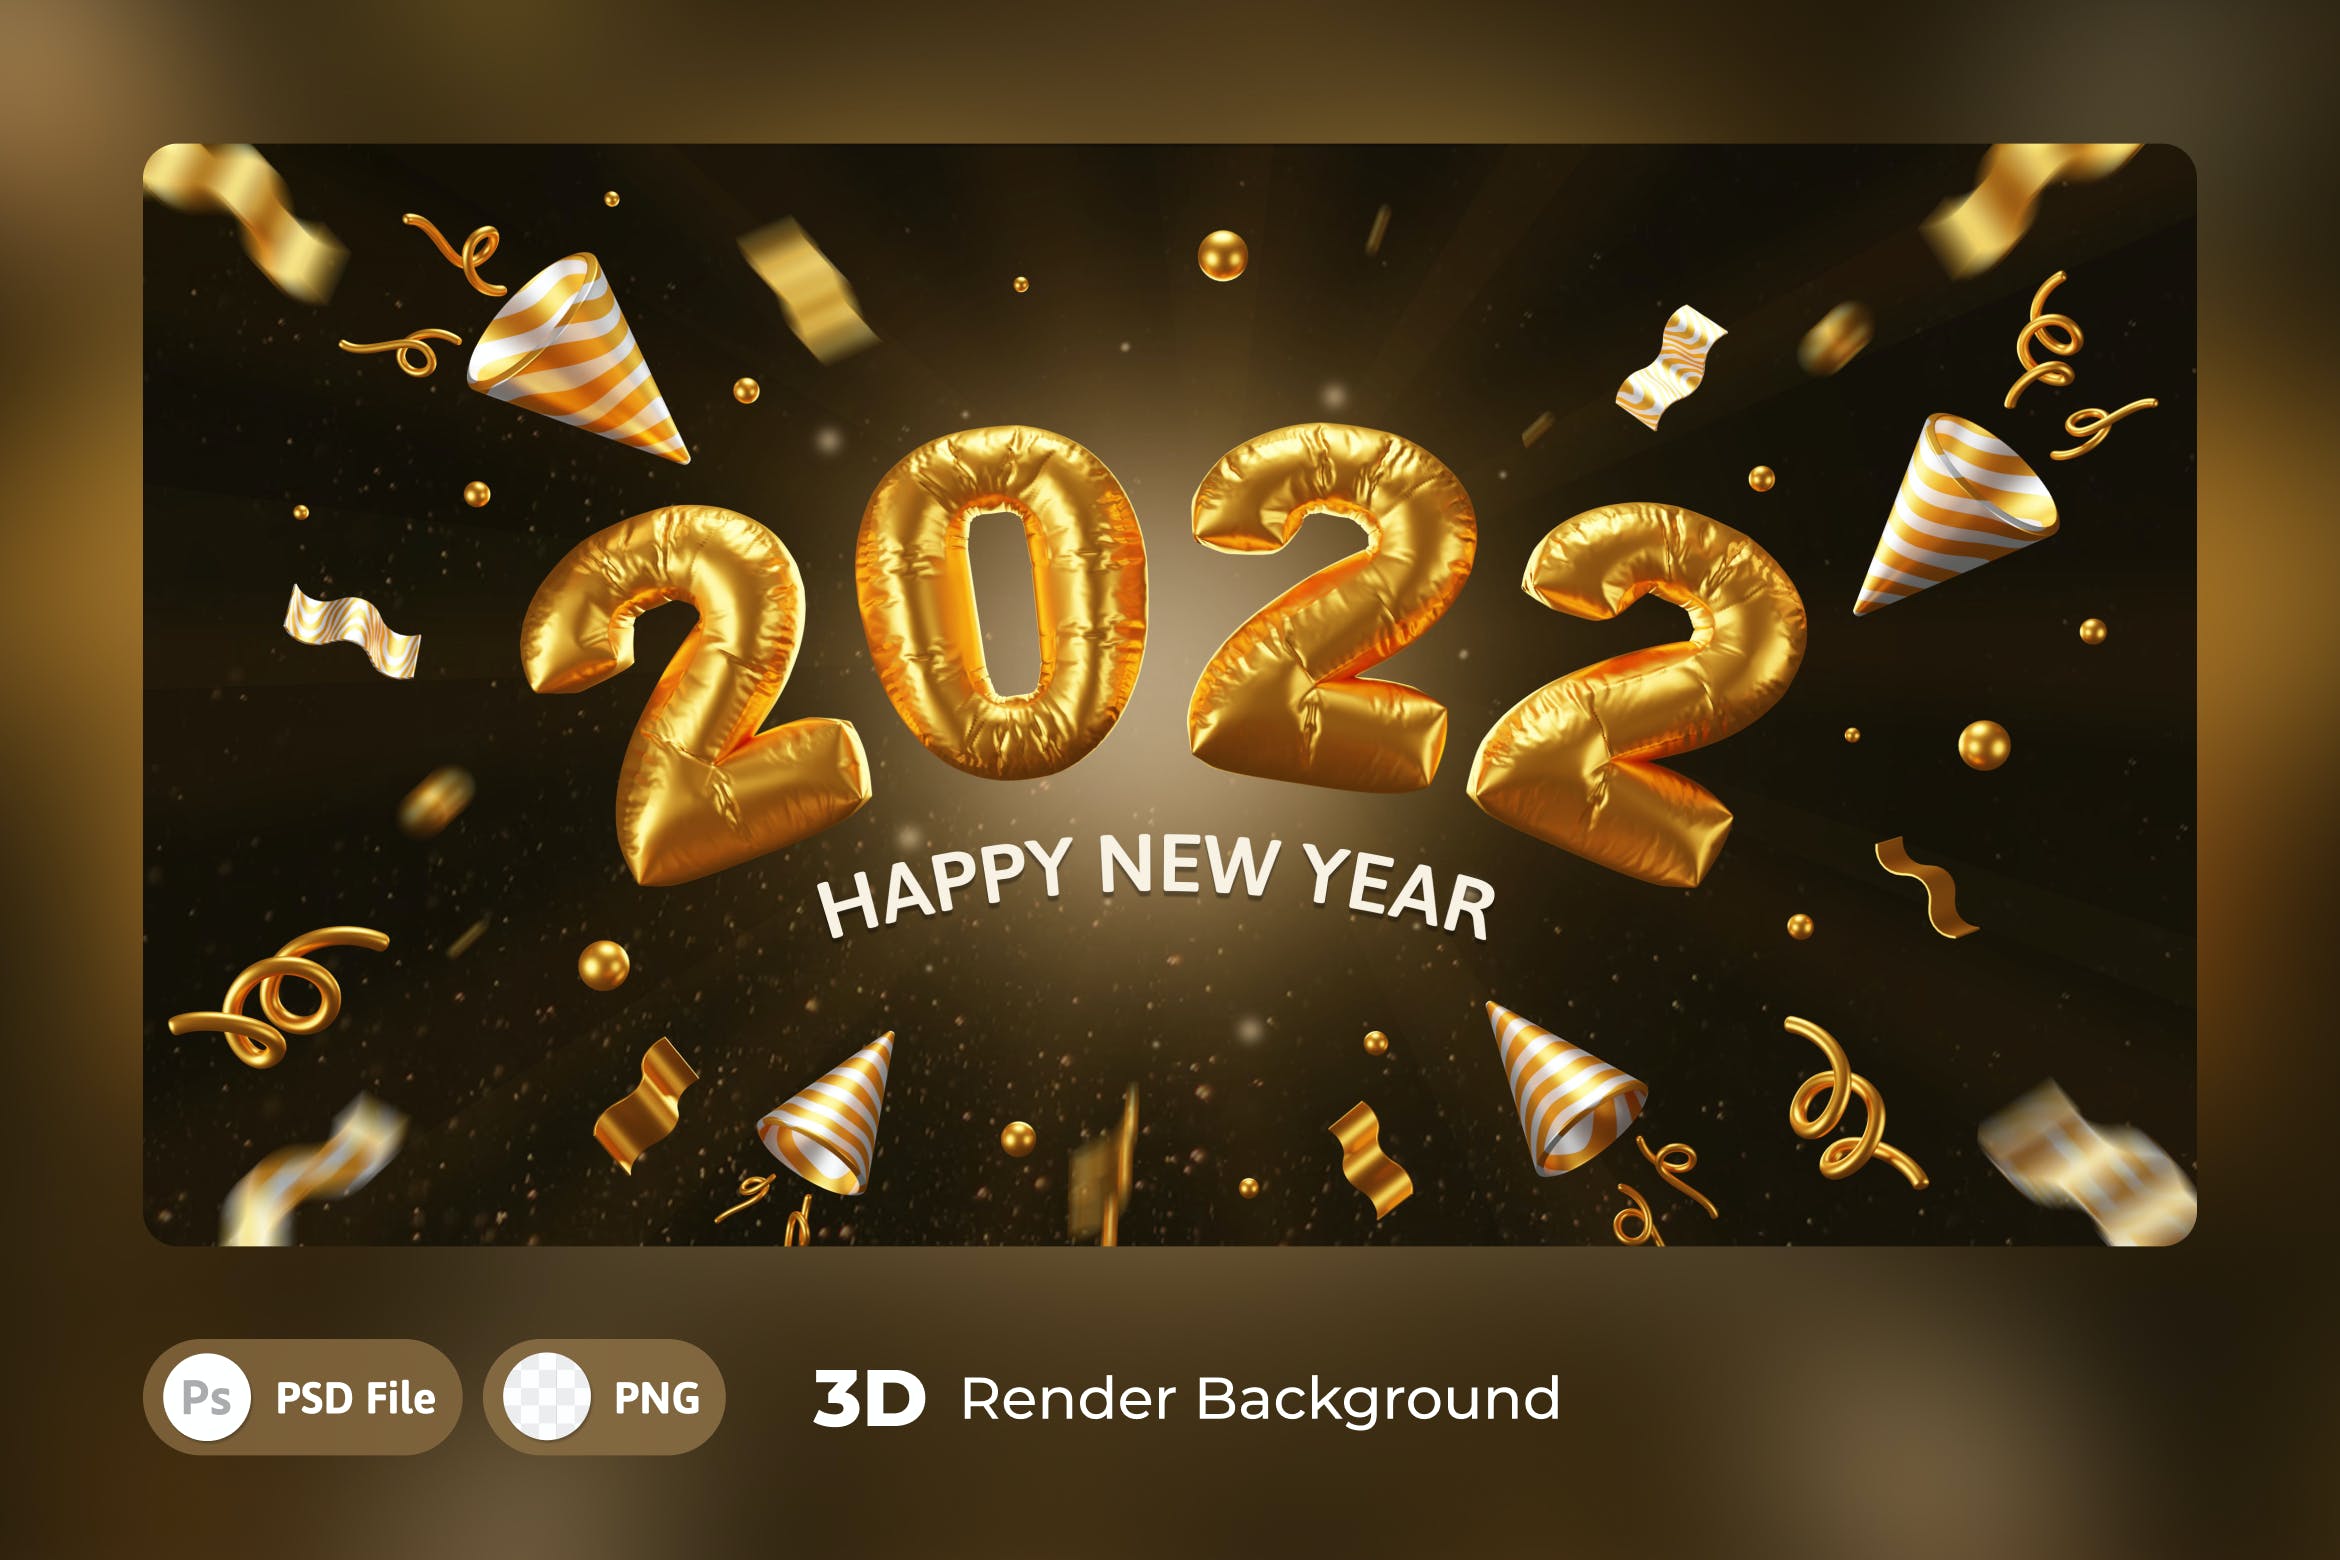 金箔气球新年快乐3D背景模板 3d Background Template Happy New Year 2022 图片素材 第1张